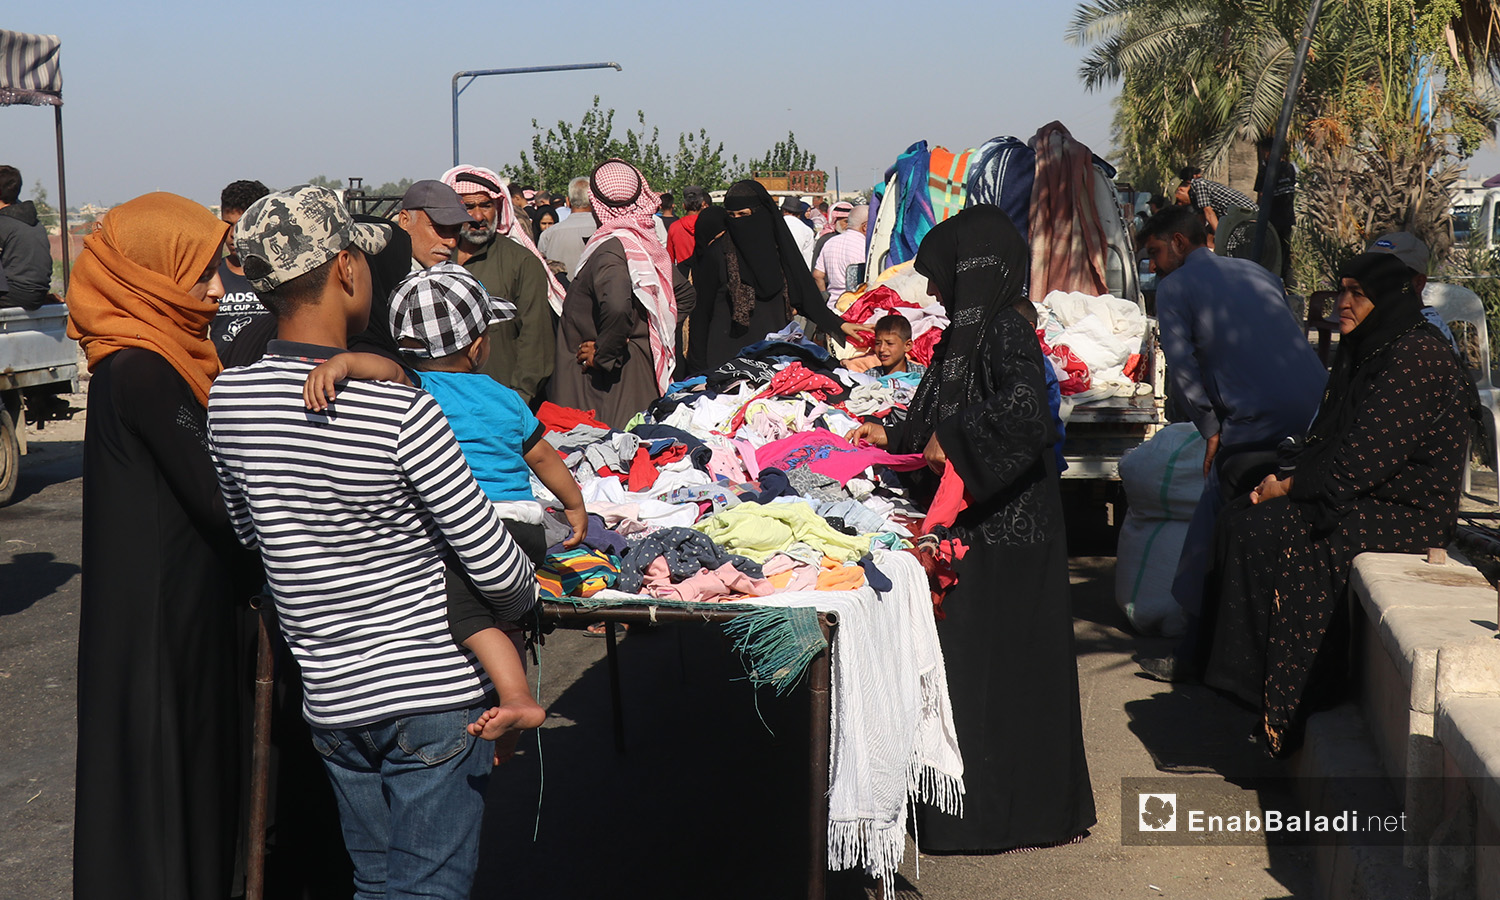 بسطة لبيع الثياب في سوق الجمعة بمدينة الرقة - 8 آب 2020 (عنب بلدي/عبد العزيز الصالح)